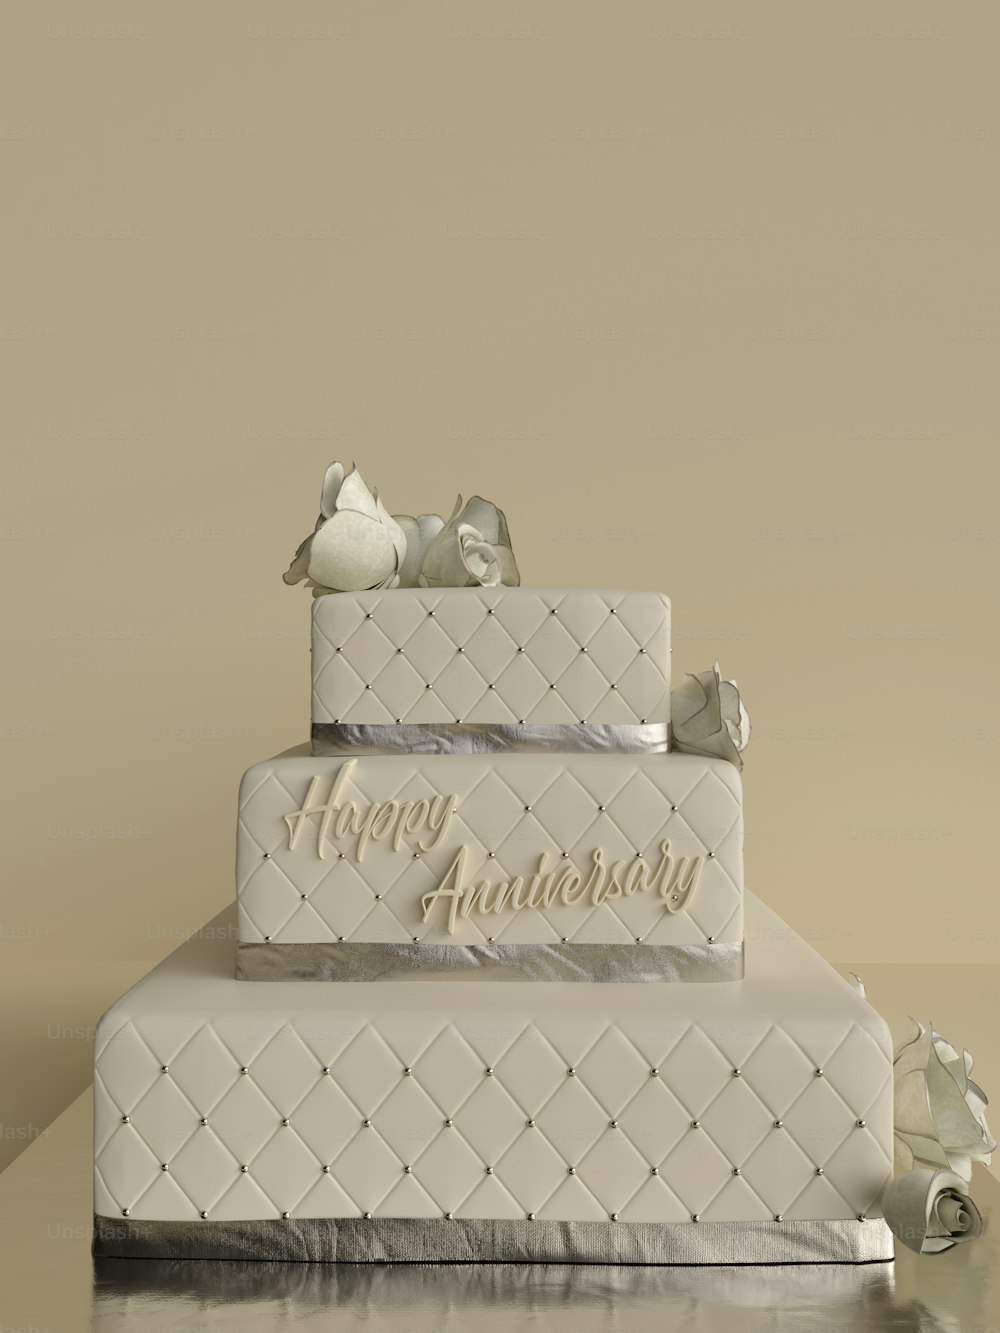 Ein dreistöckiger Kuchen mit einem Happy Anniversary Schild darauf